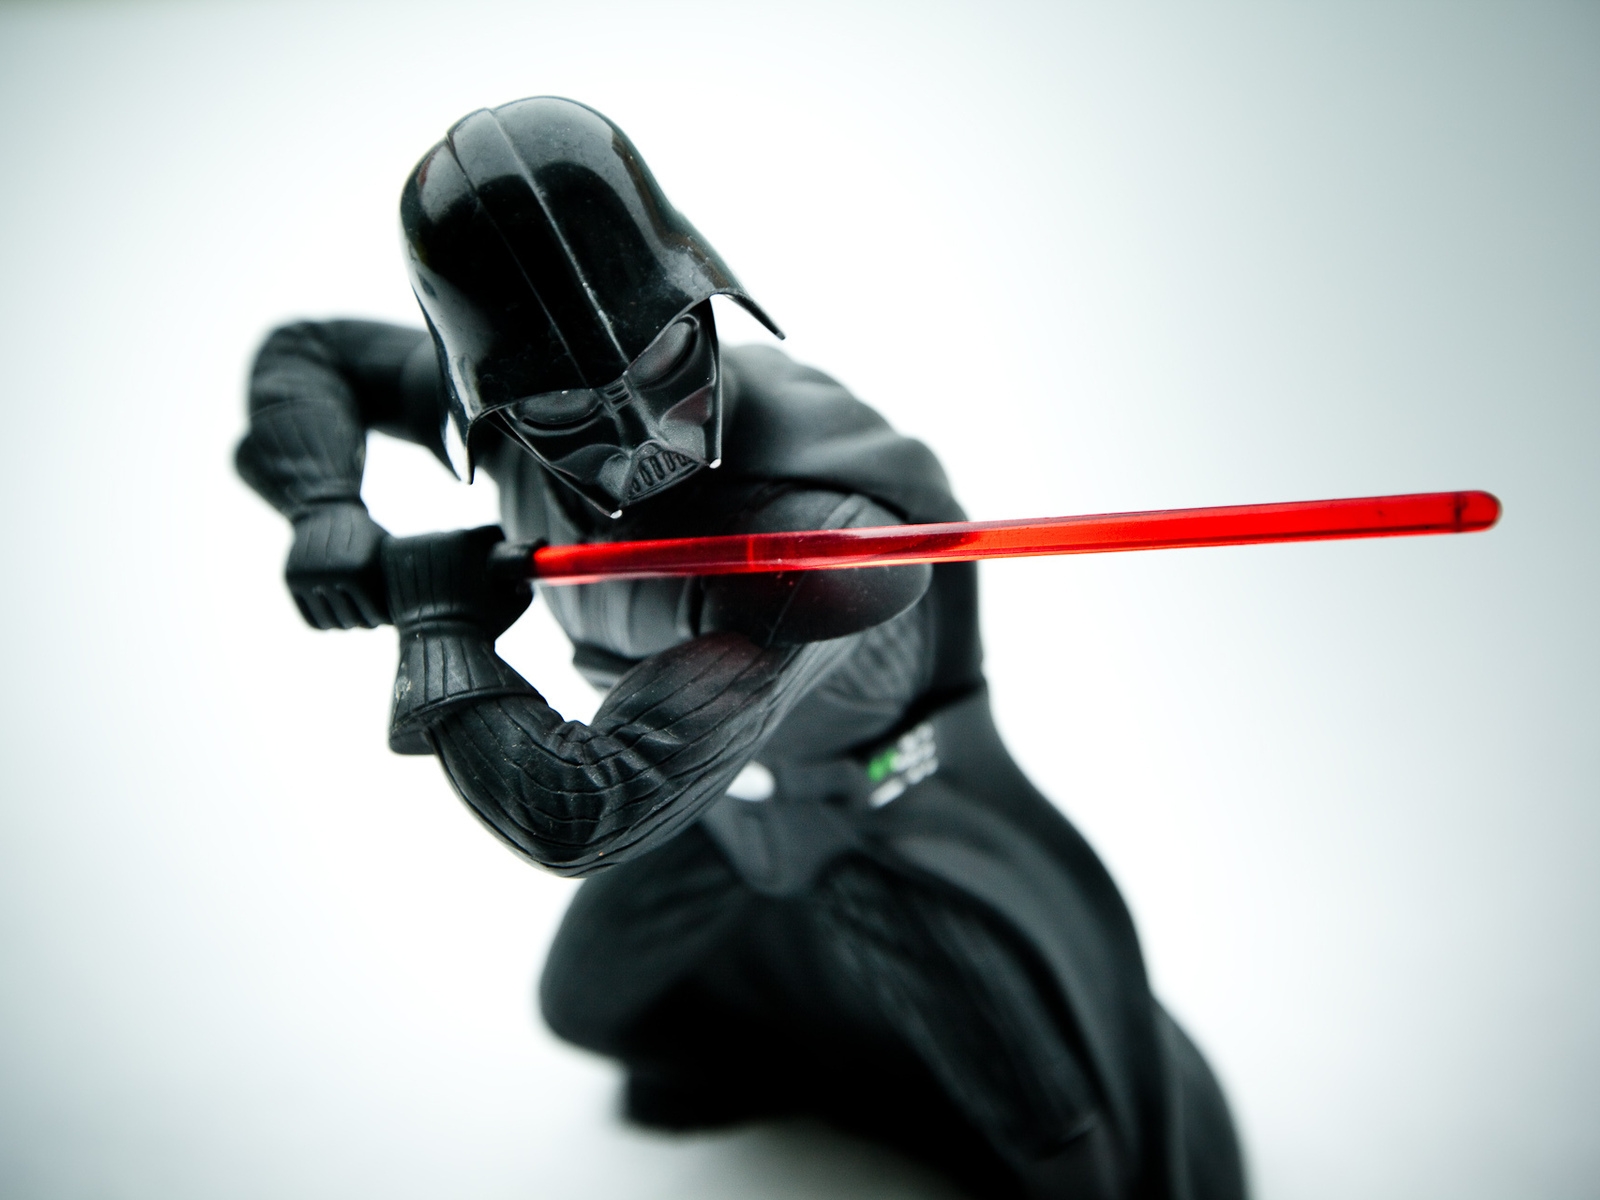 Star Wars Darth Vader for 1600 x 1200 resolution